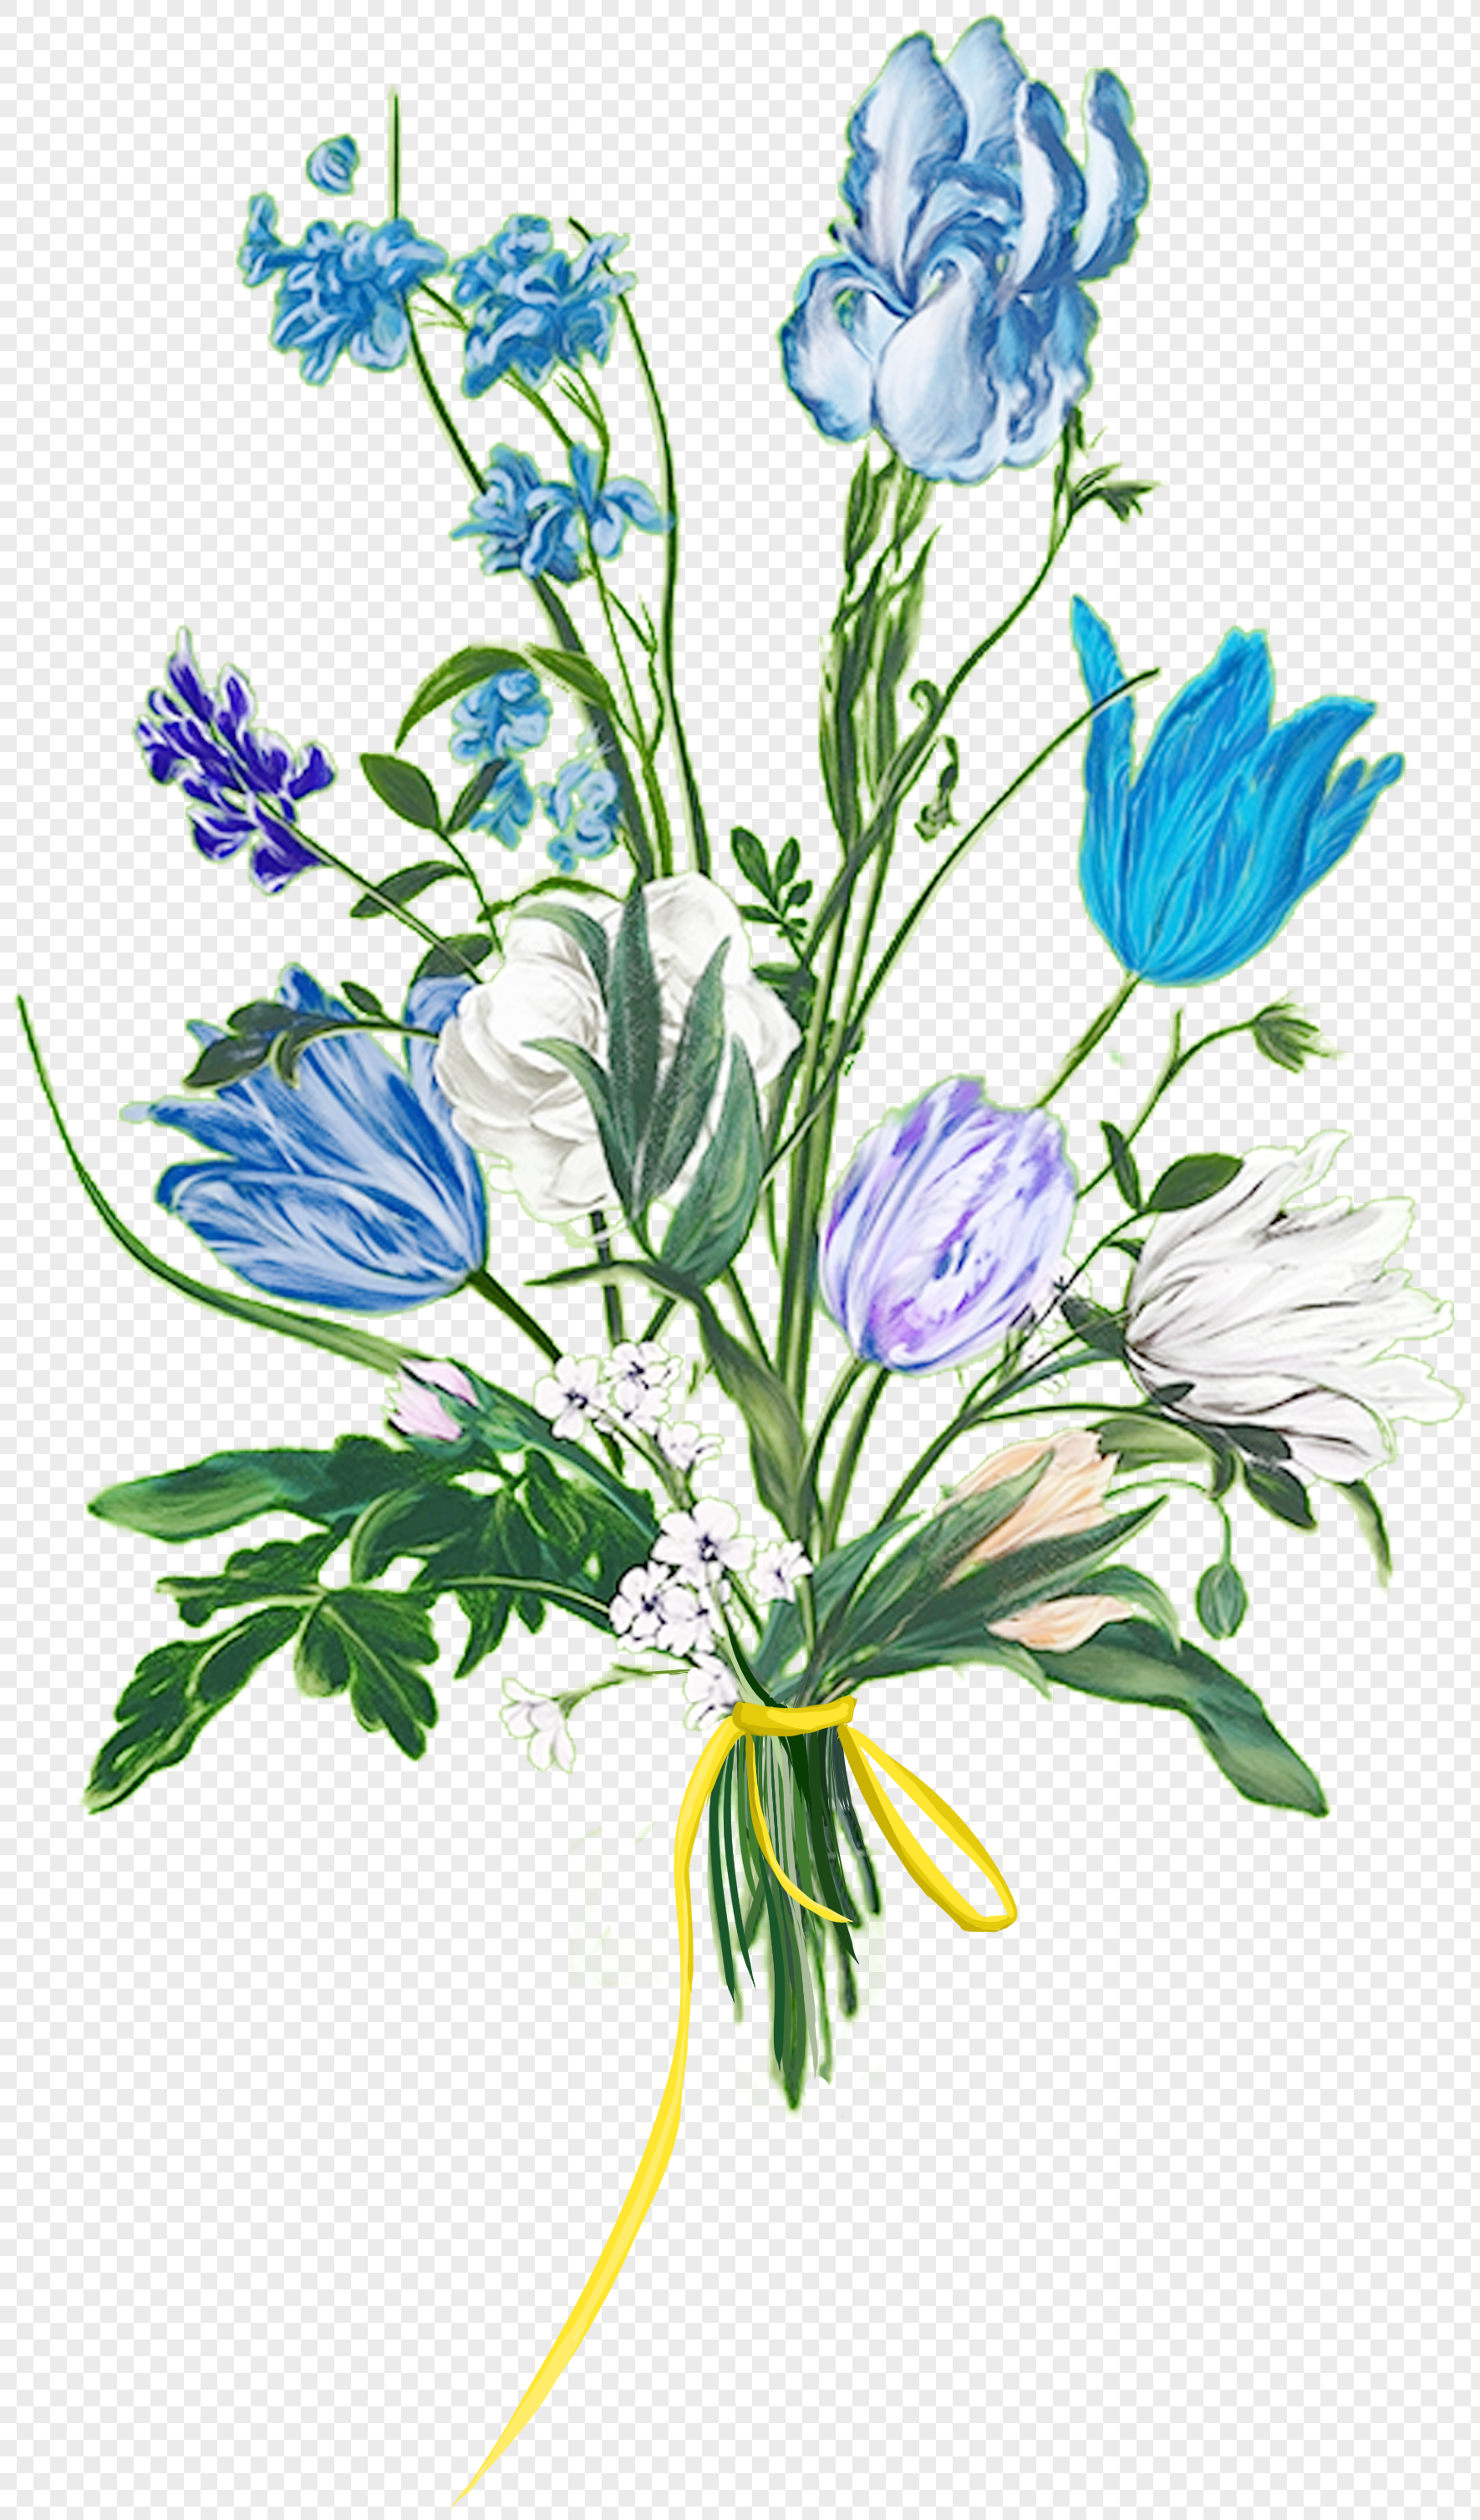 Gambar Bunga Lavender Kartun - Gambar Bunga